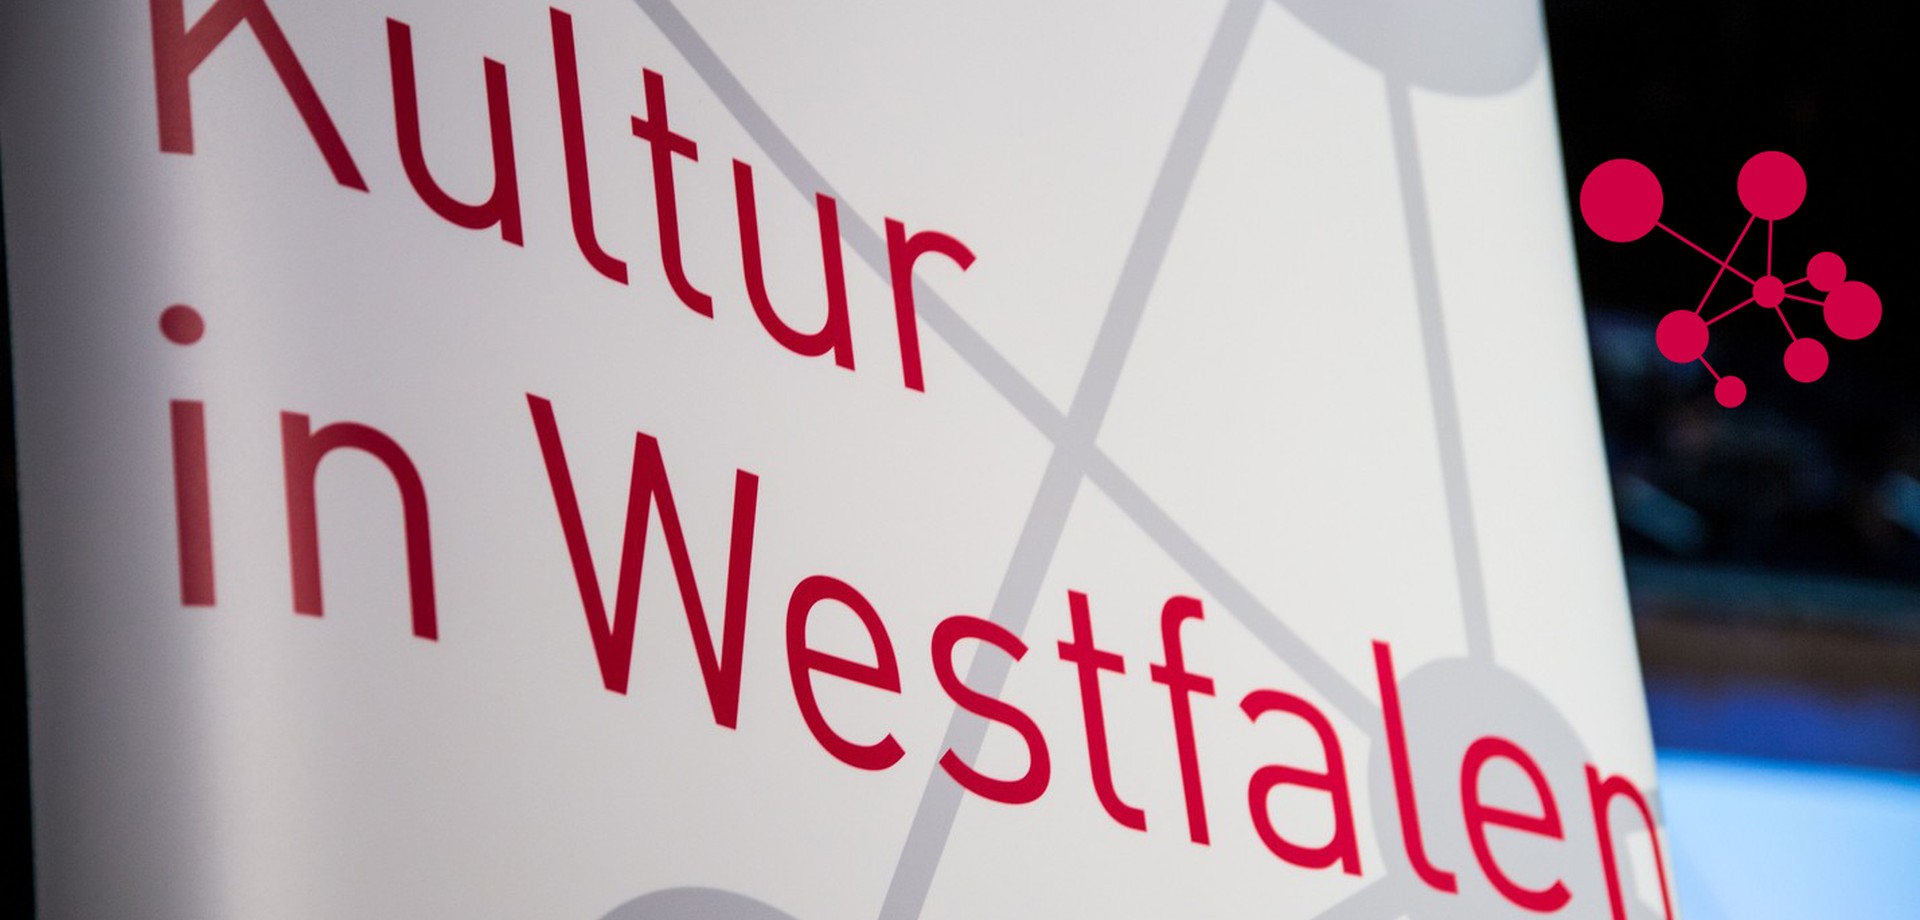 Das Referat "Strategische Beratung/ Kultur in Westfalen" in der LWL-Kulturabteilung stärkt die kulturelle Infrastruktur in der Region. Logo auf Rollup